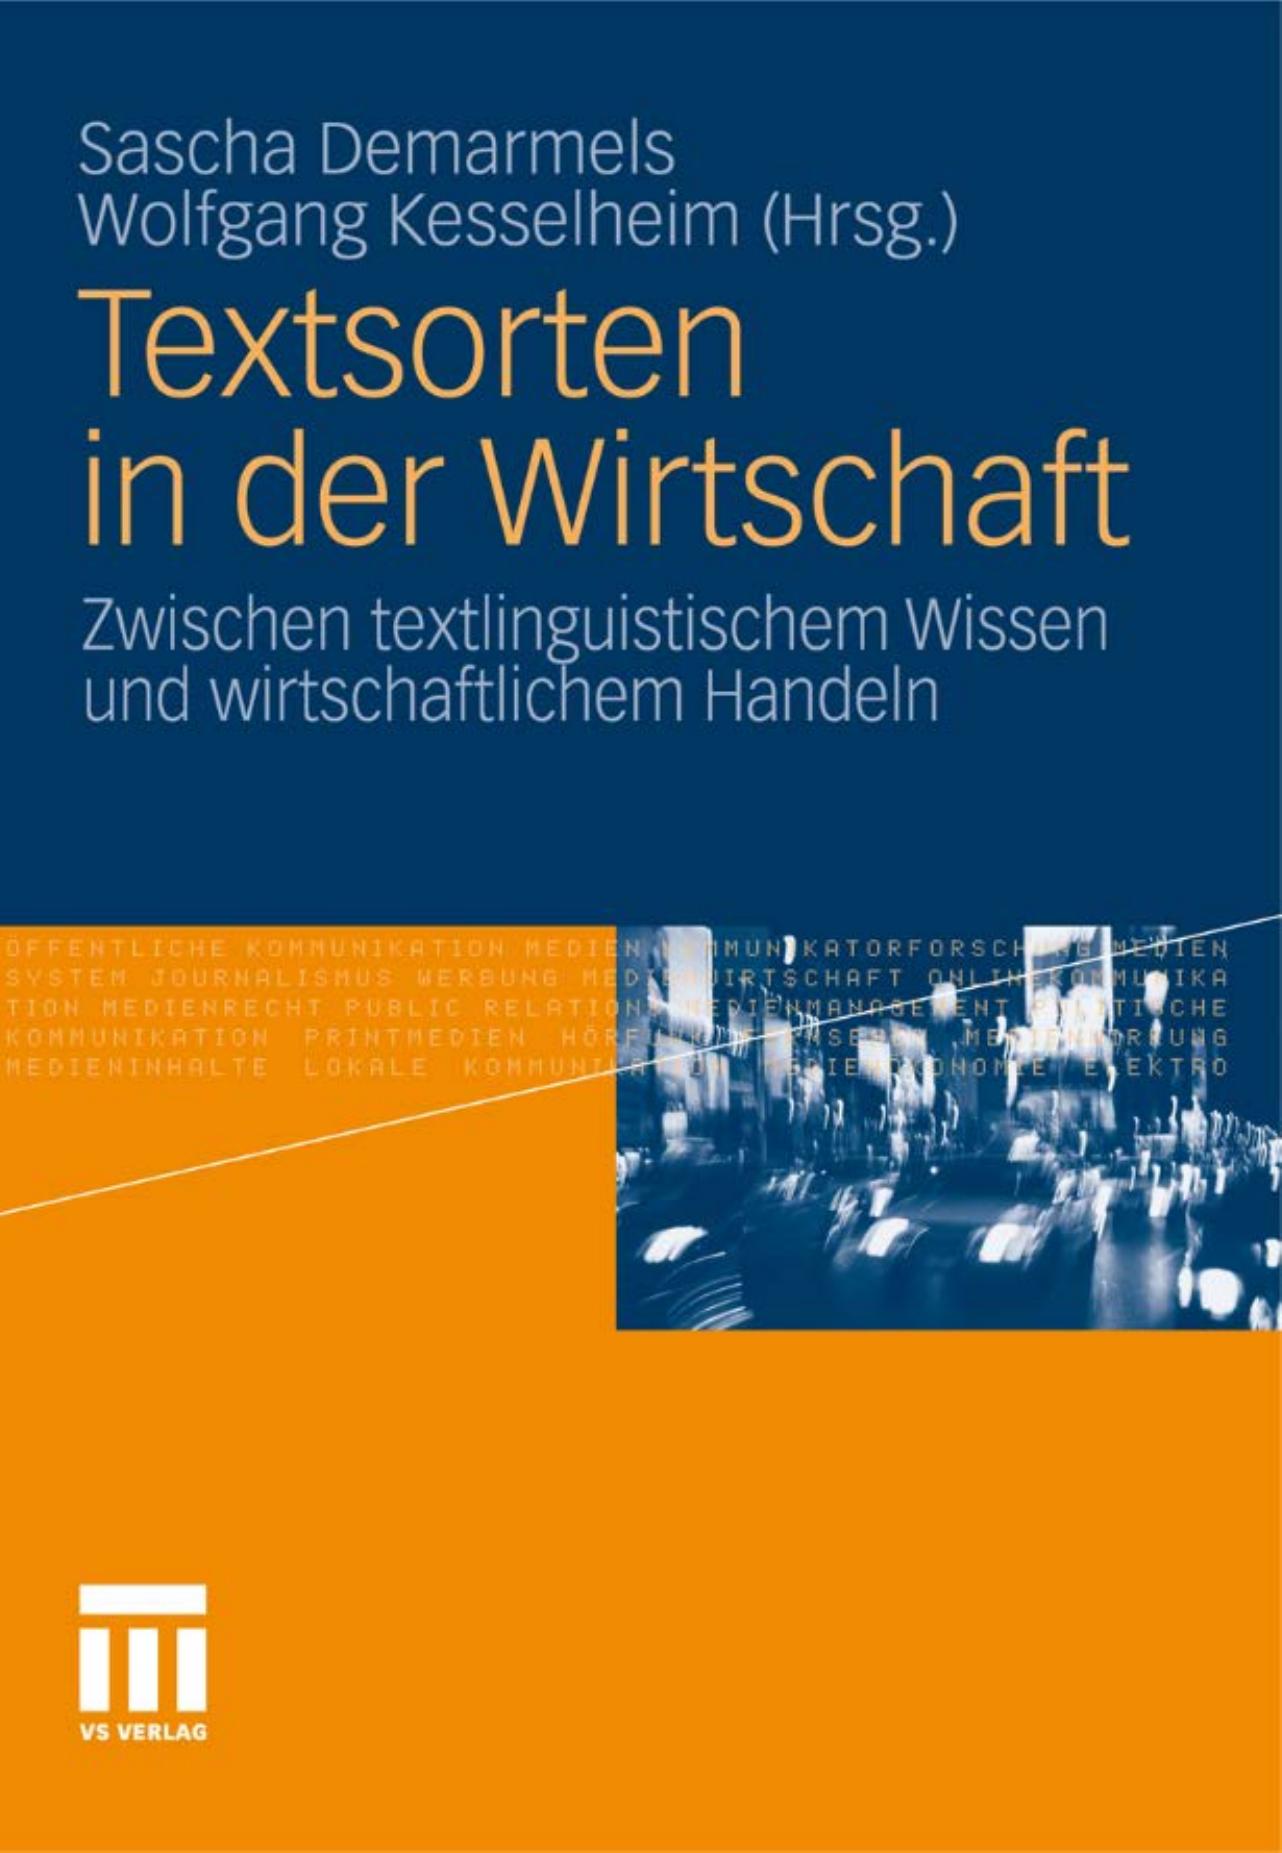 Textsorten in der Wirtschaft: Zwischen textlinguistischem Wissen und wirtschaftlichem Handeln